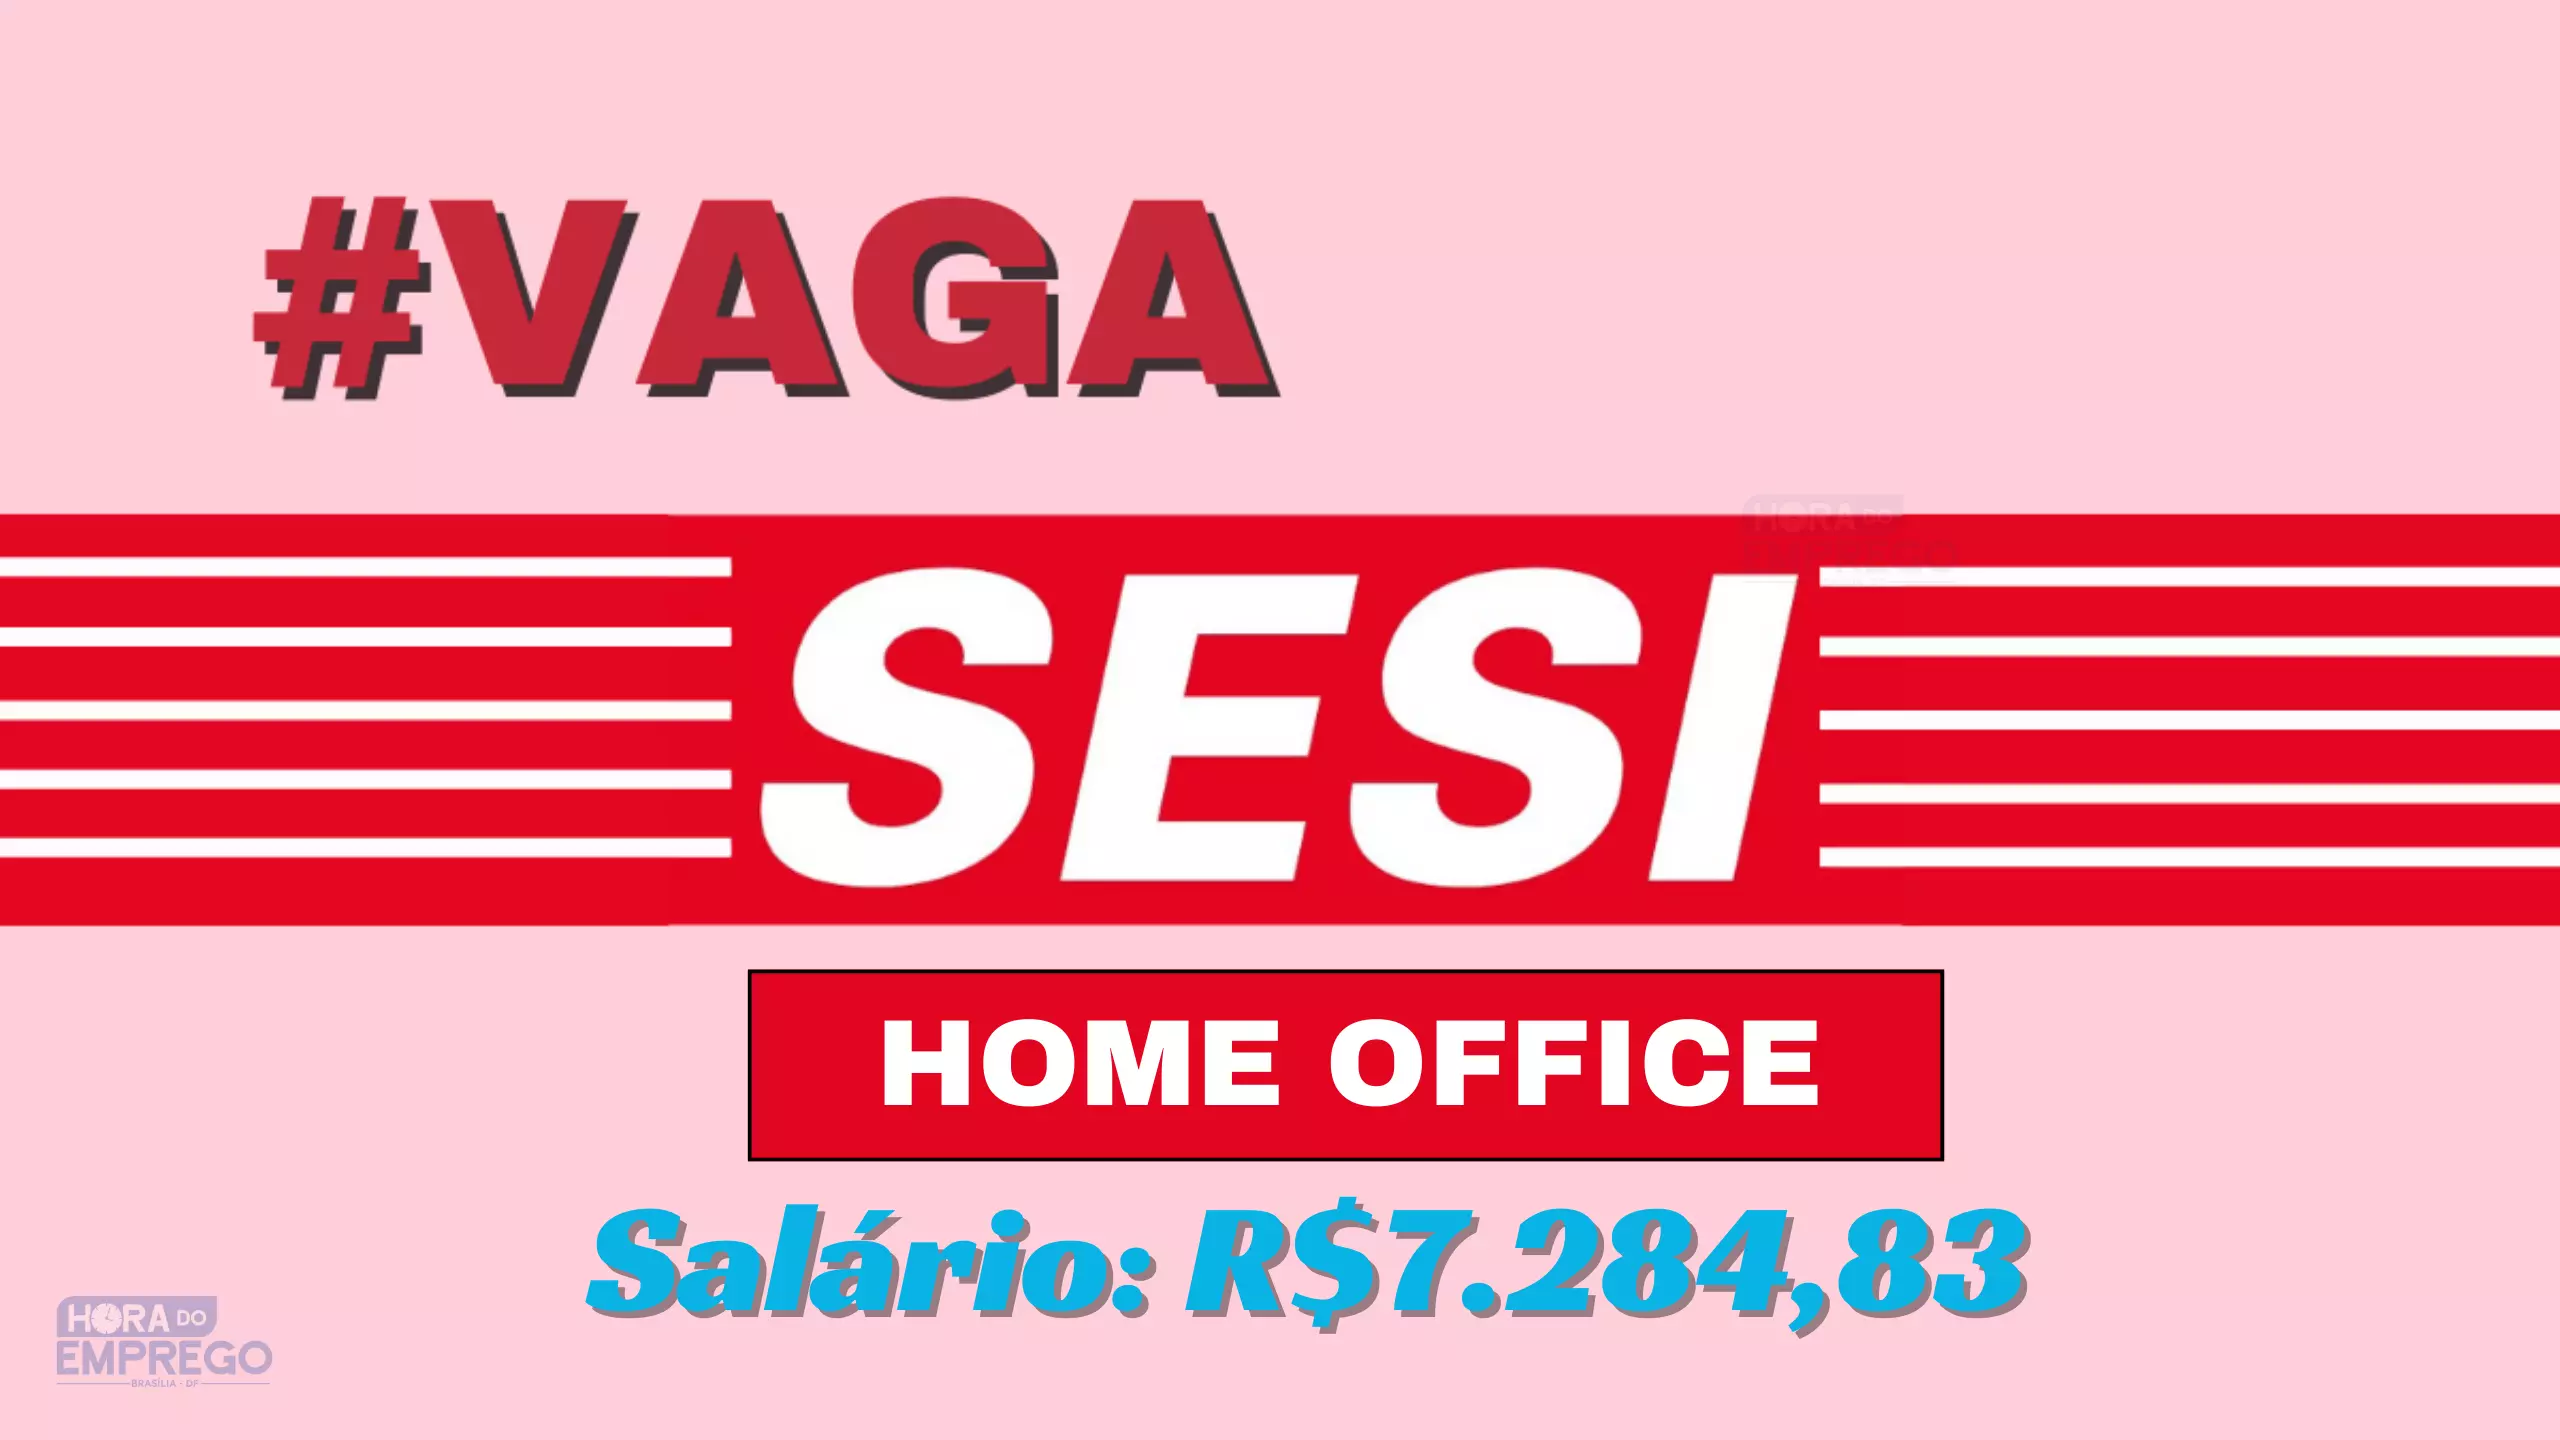 Sesi Anuncia Vaga 100 Home Office Com Salário De R728483 Para Analista De Gestão Hora Do 2521